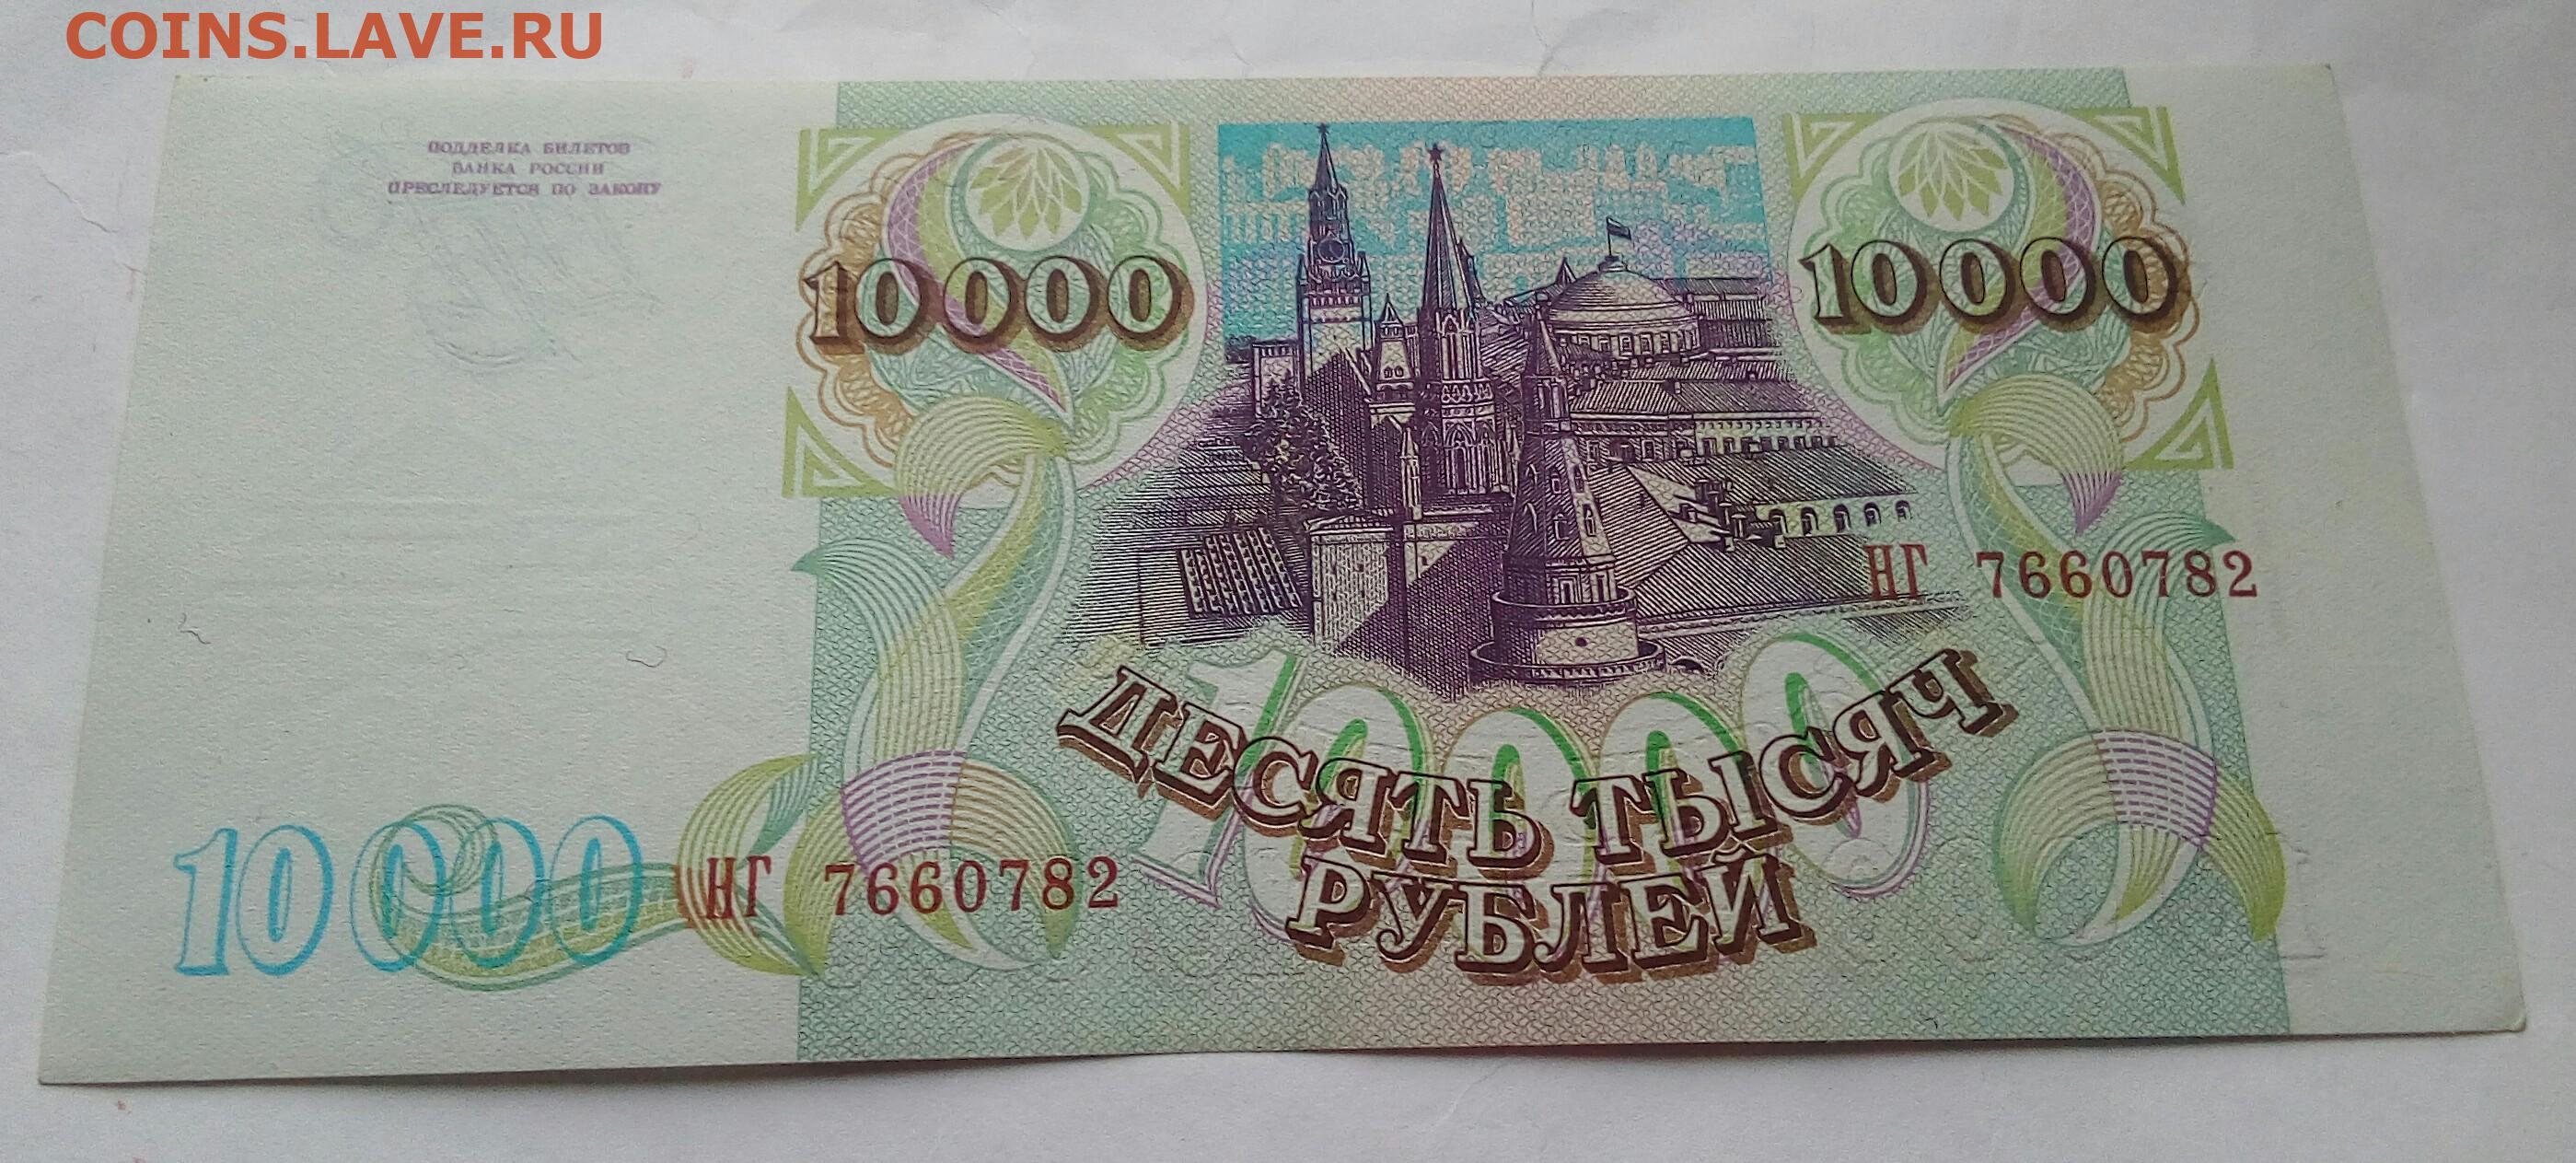 Ли 10000 в августе. 10 000 Рублей купюра 1995. 10000р. 10000 Руб. 1993г. Фото 10000р бумажные.